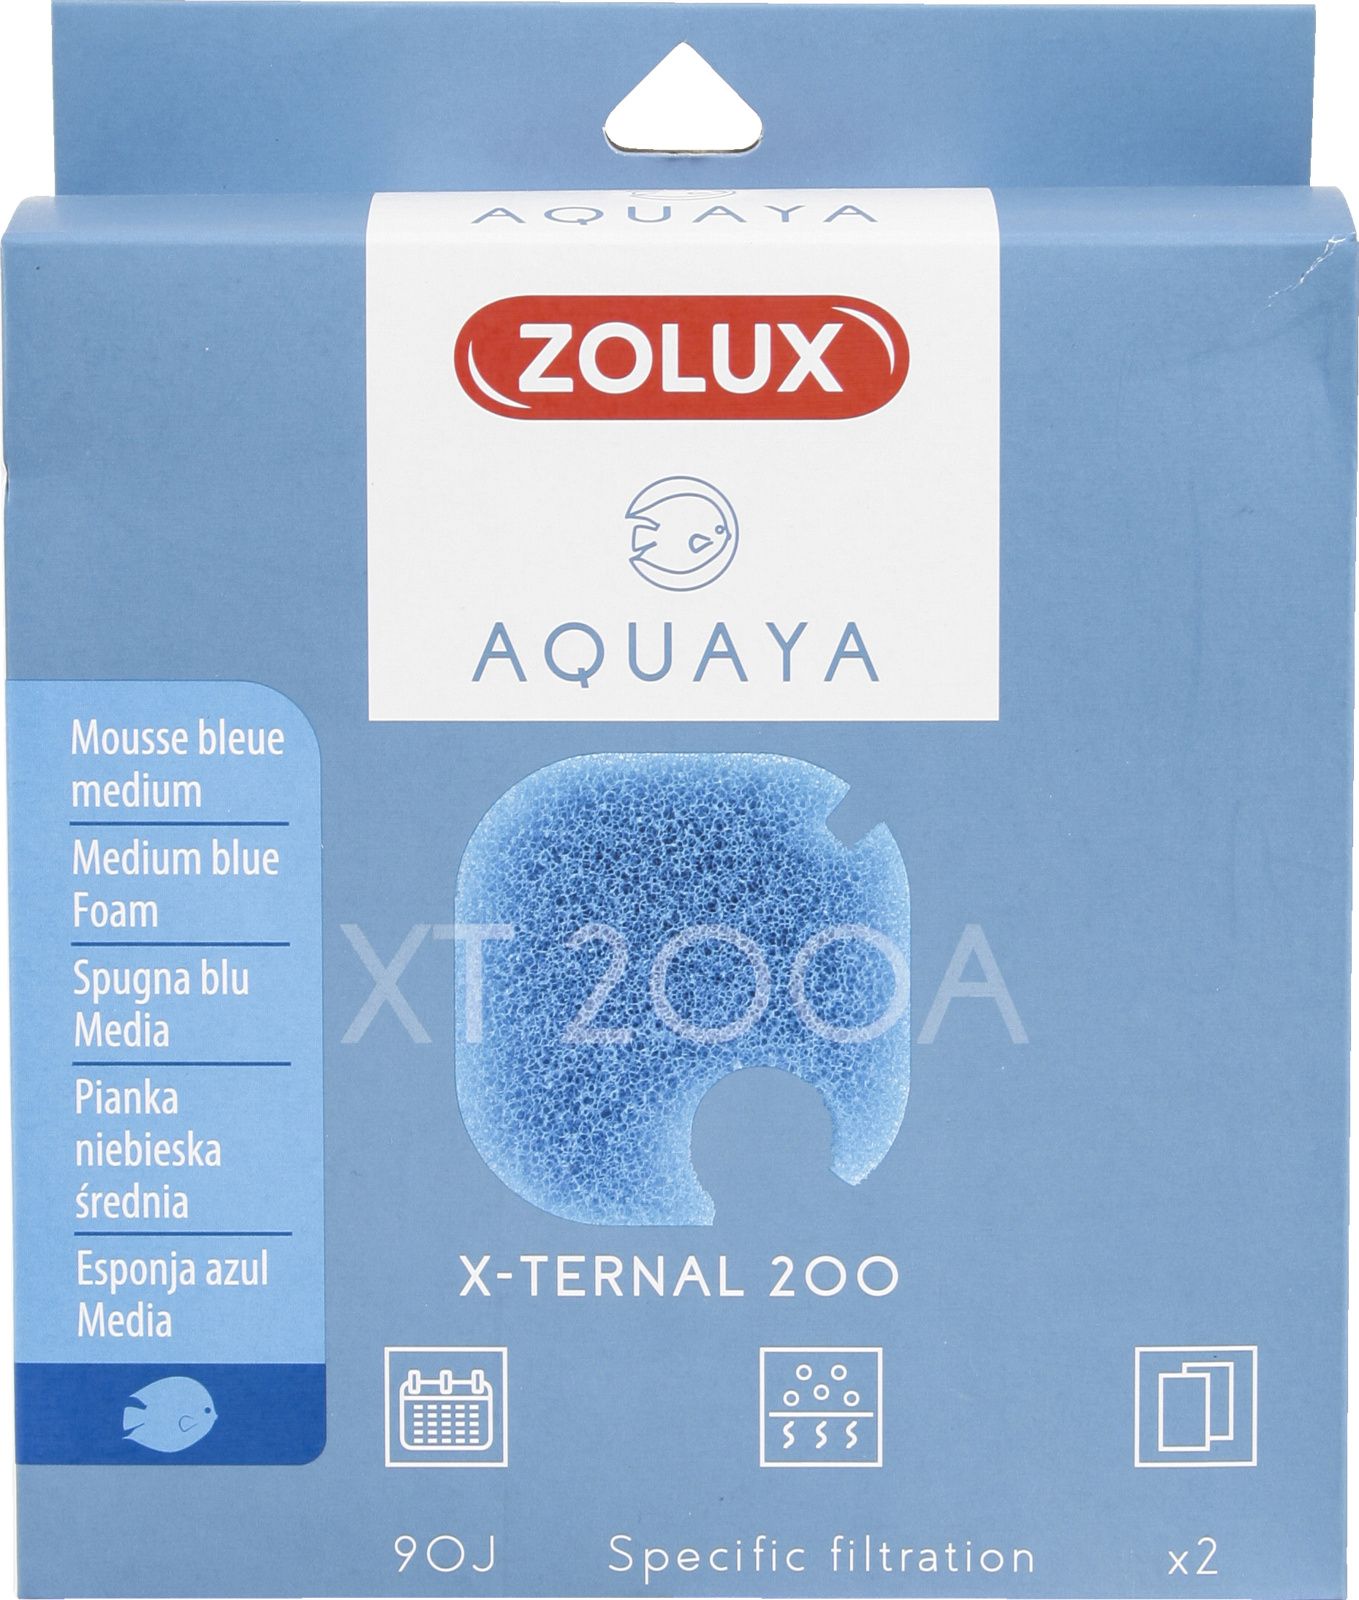 Zolux AQUAYA Wklad gabka Blue Foam Xternal 200 7544712 (3336023302423) akvārija filtrs